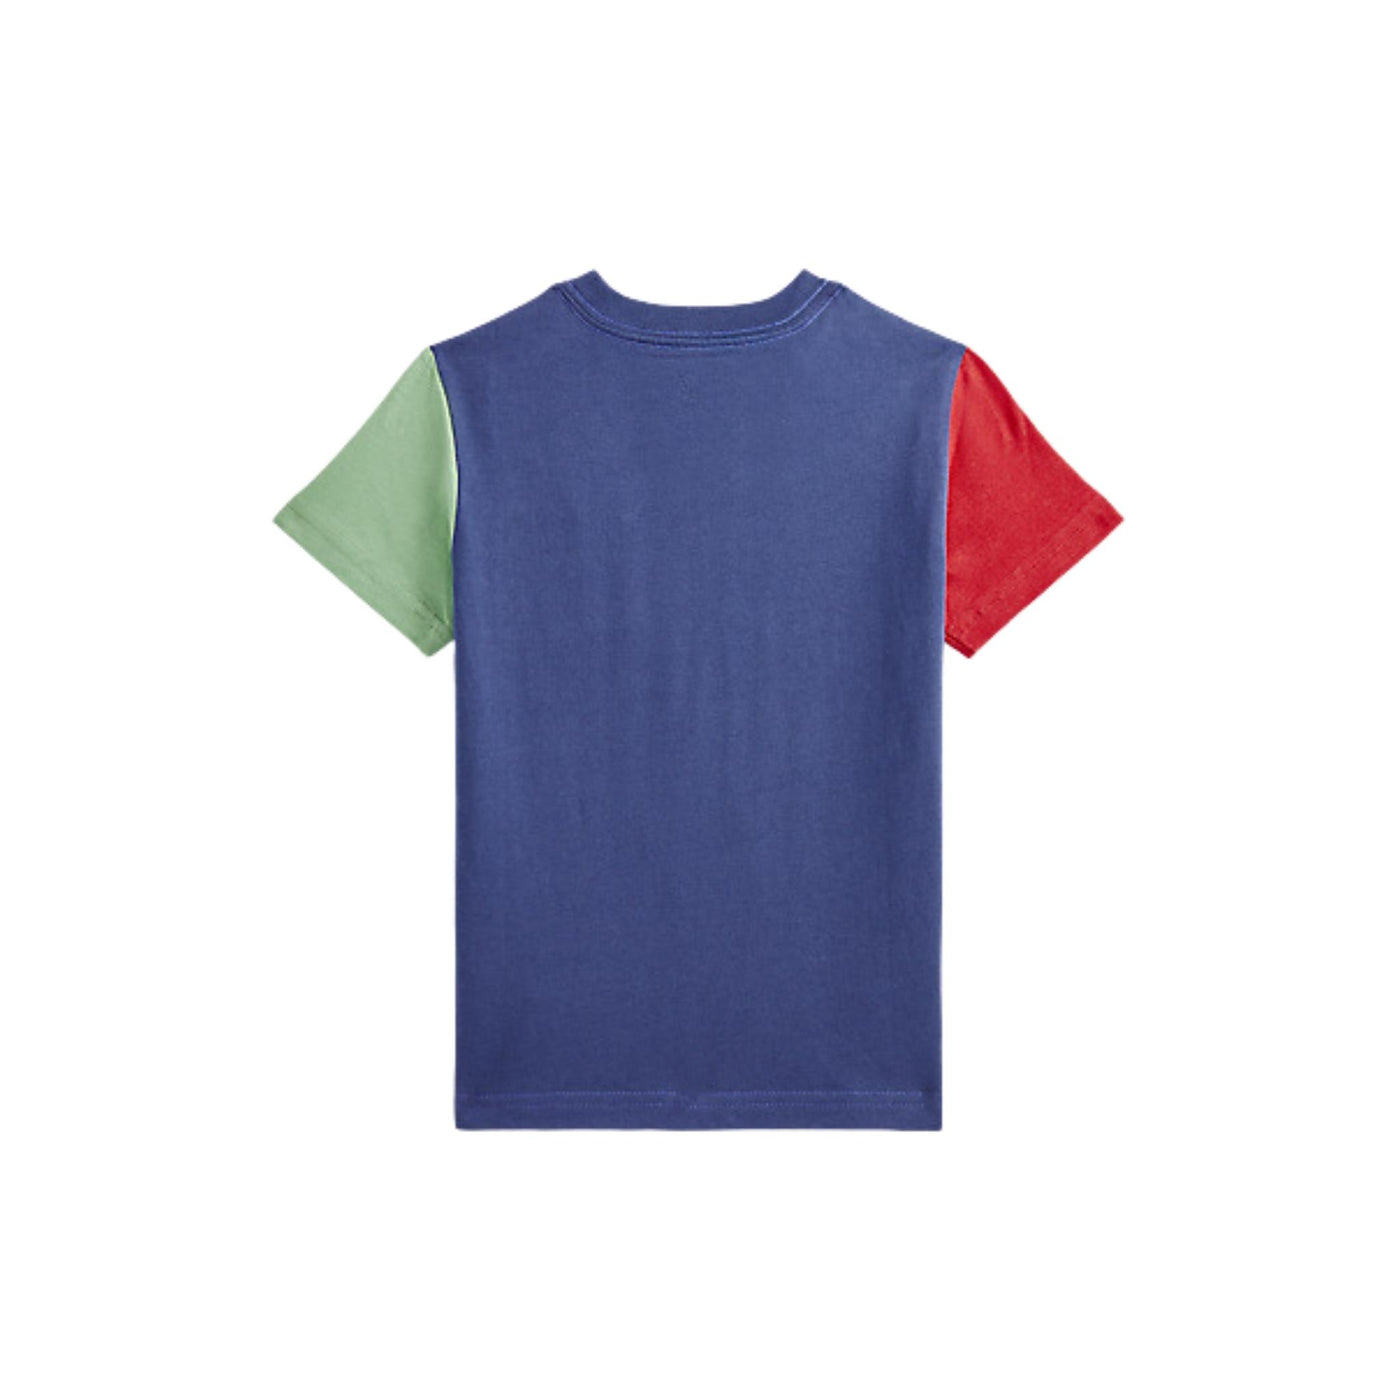 t-shirt bambino ralph lauren blocchi colore con taschino retro